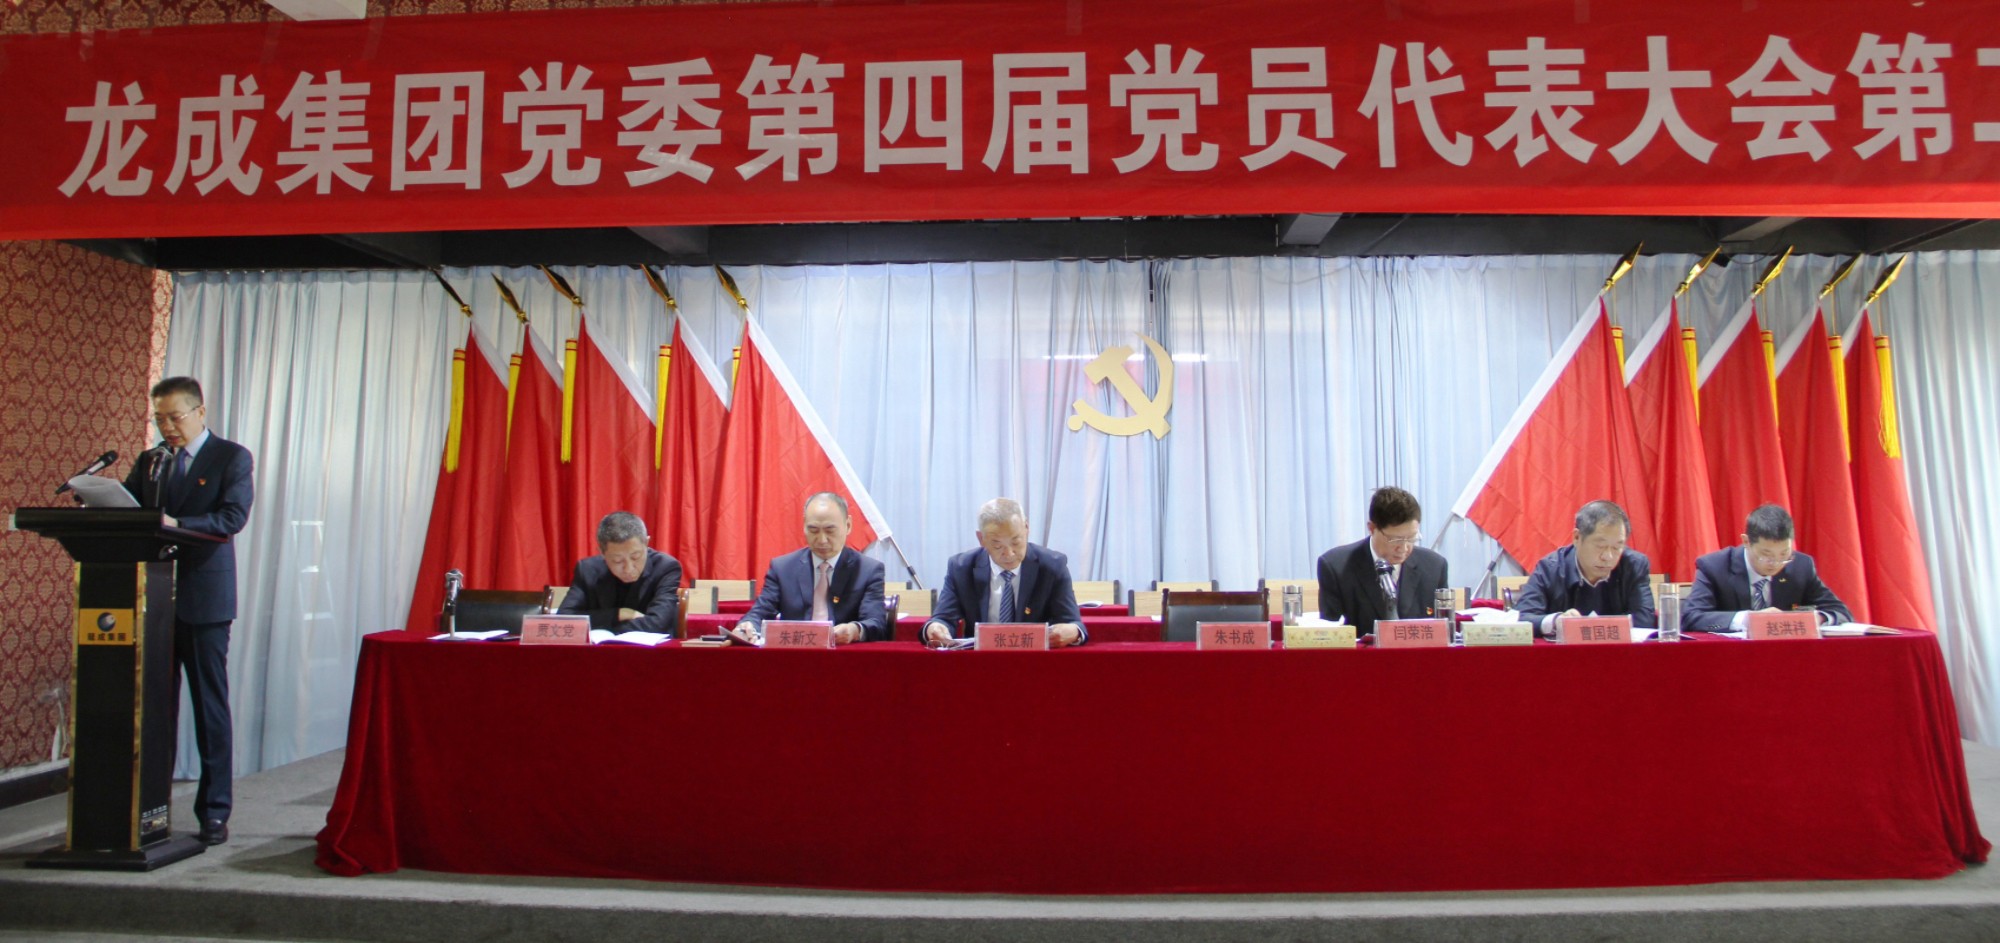 河南龙成集团党委第四届党员代表大会第二次会议胜利召开